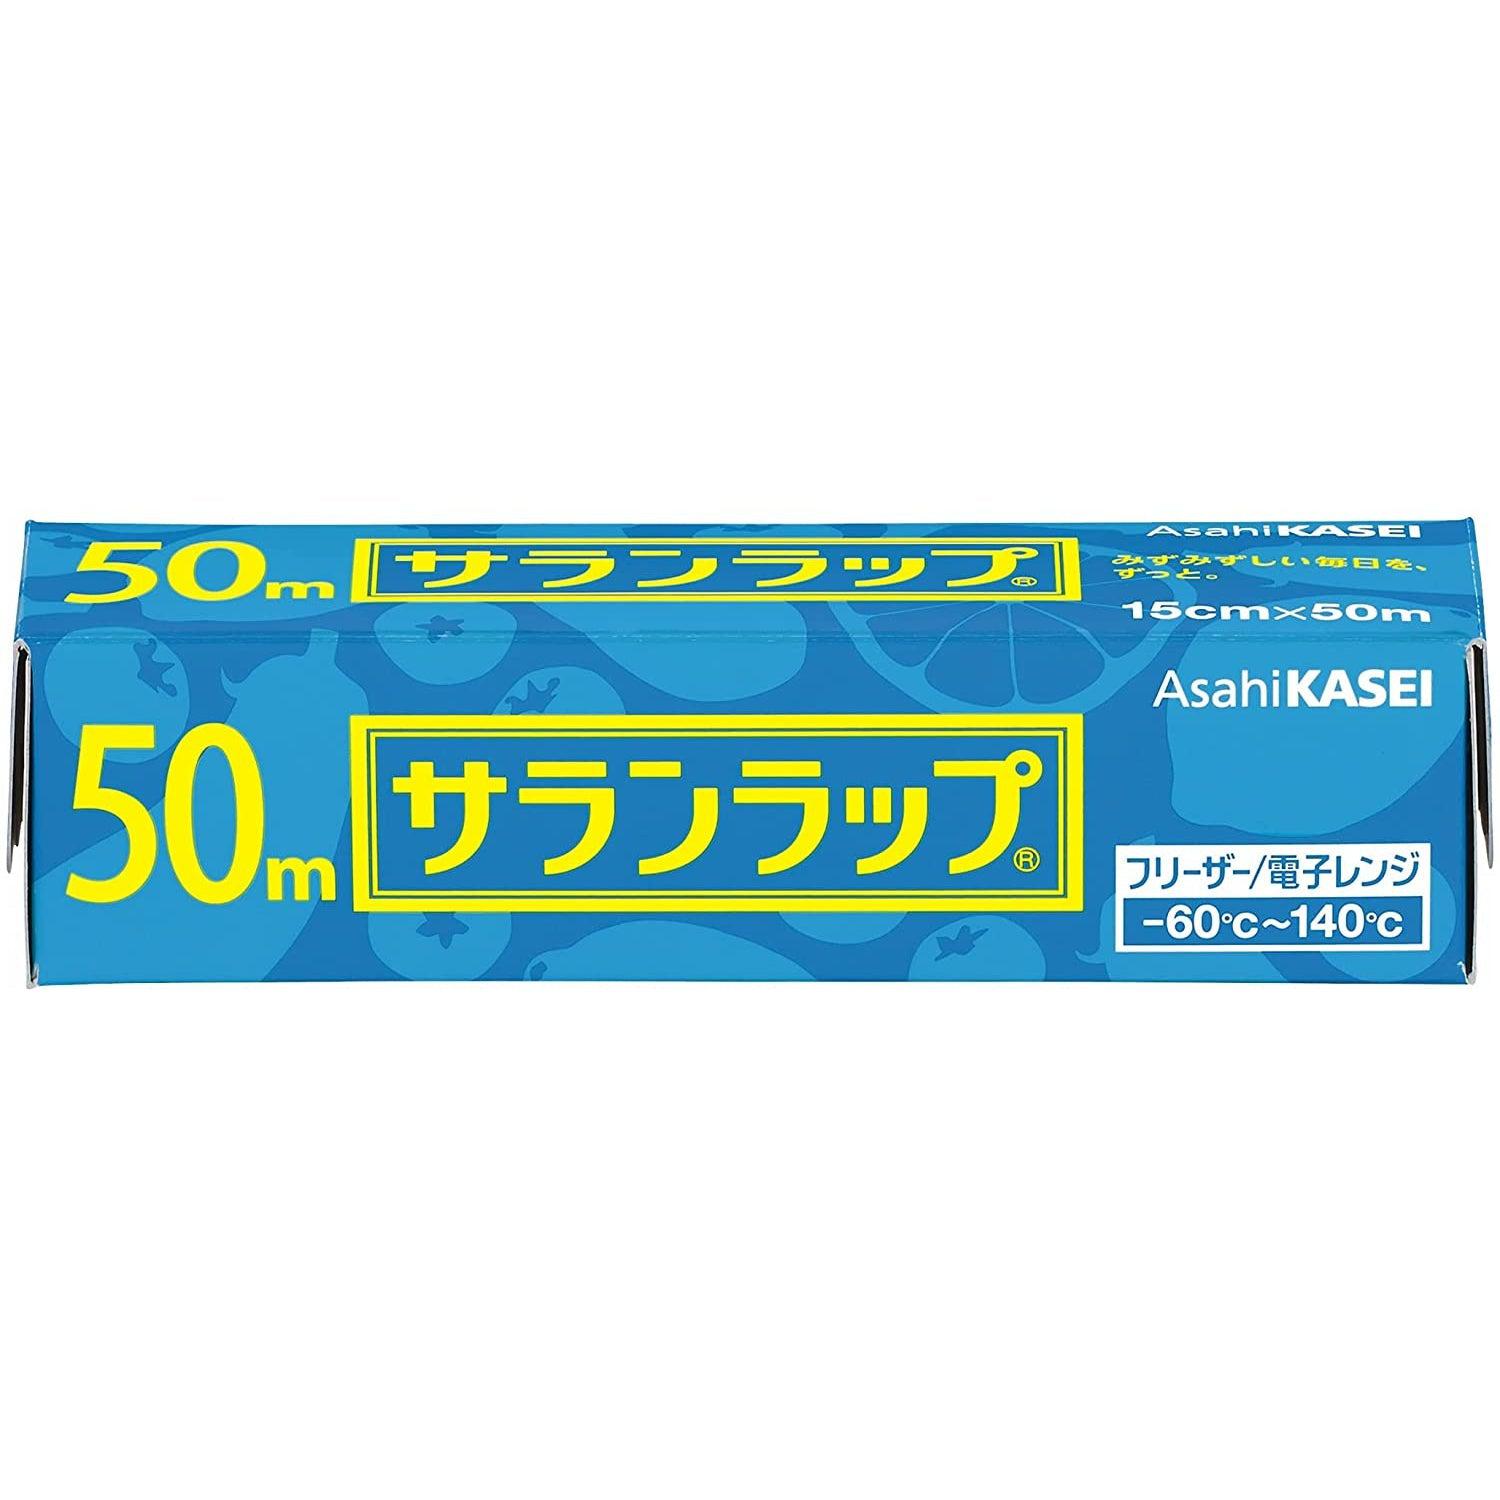 Asahi Kasei Saran Wrap Japanese Plastic Wrap 22cm x 50m – Japanese Taste